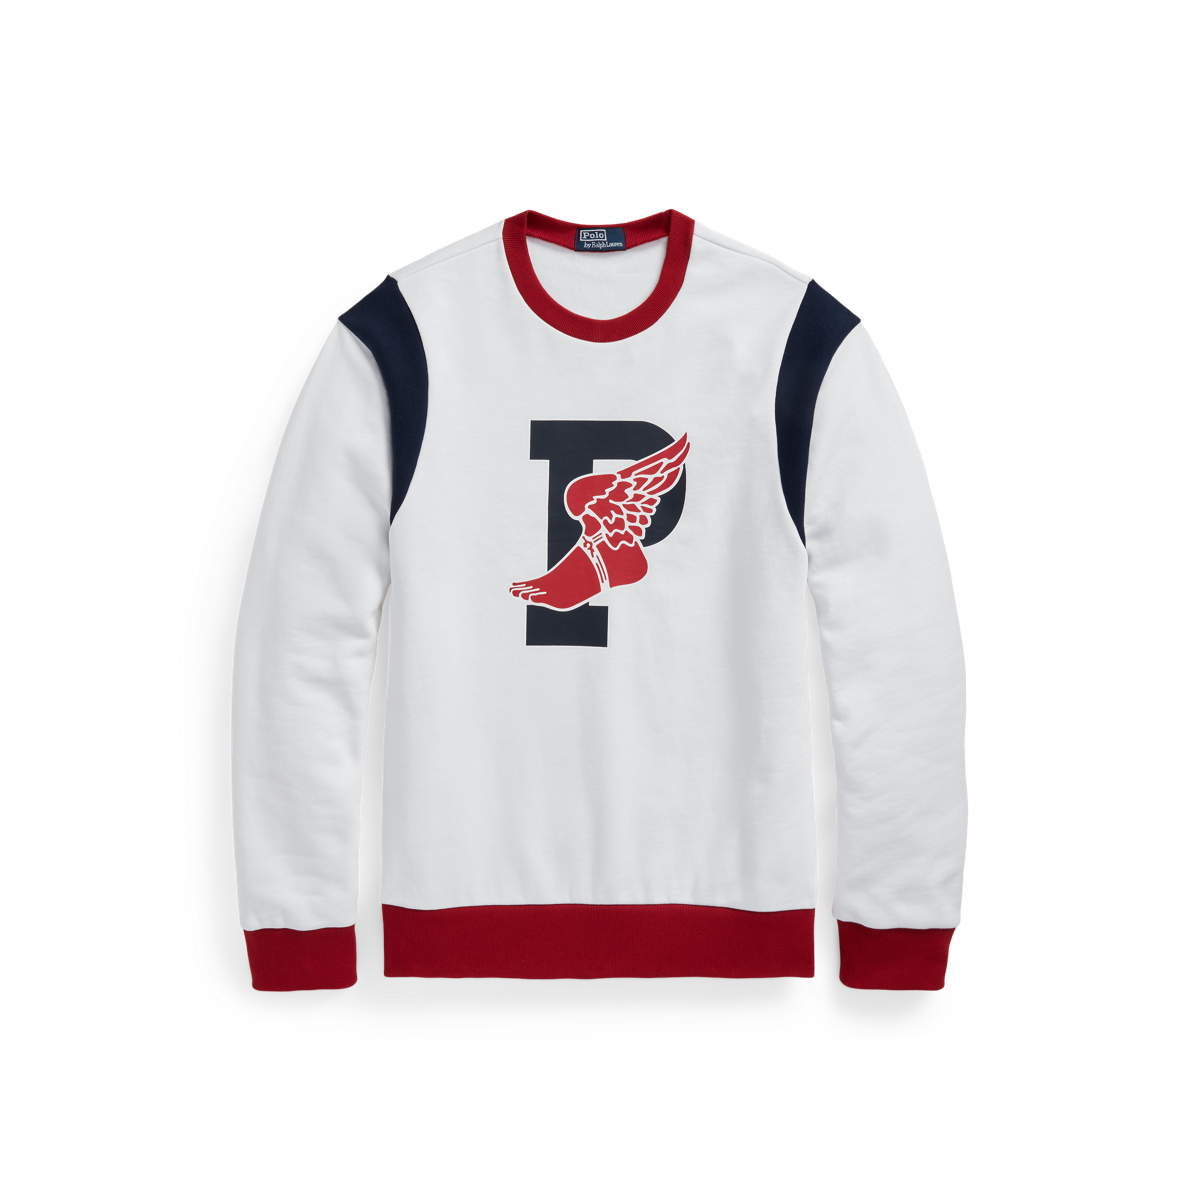 P-Wing Fleece Sweatshirt